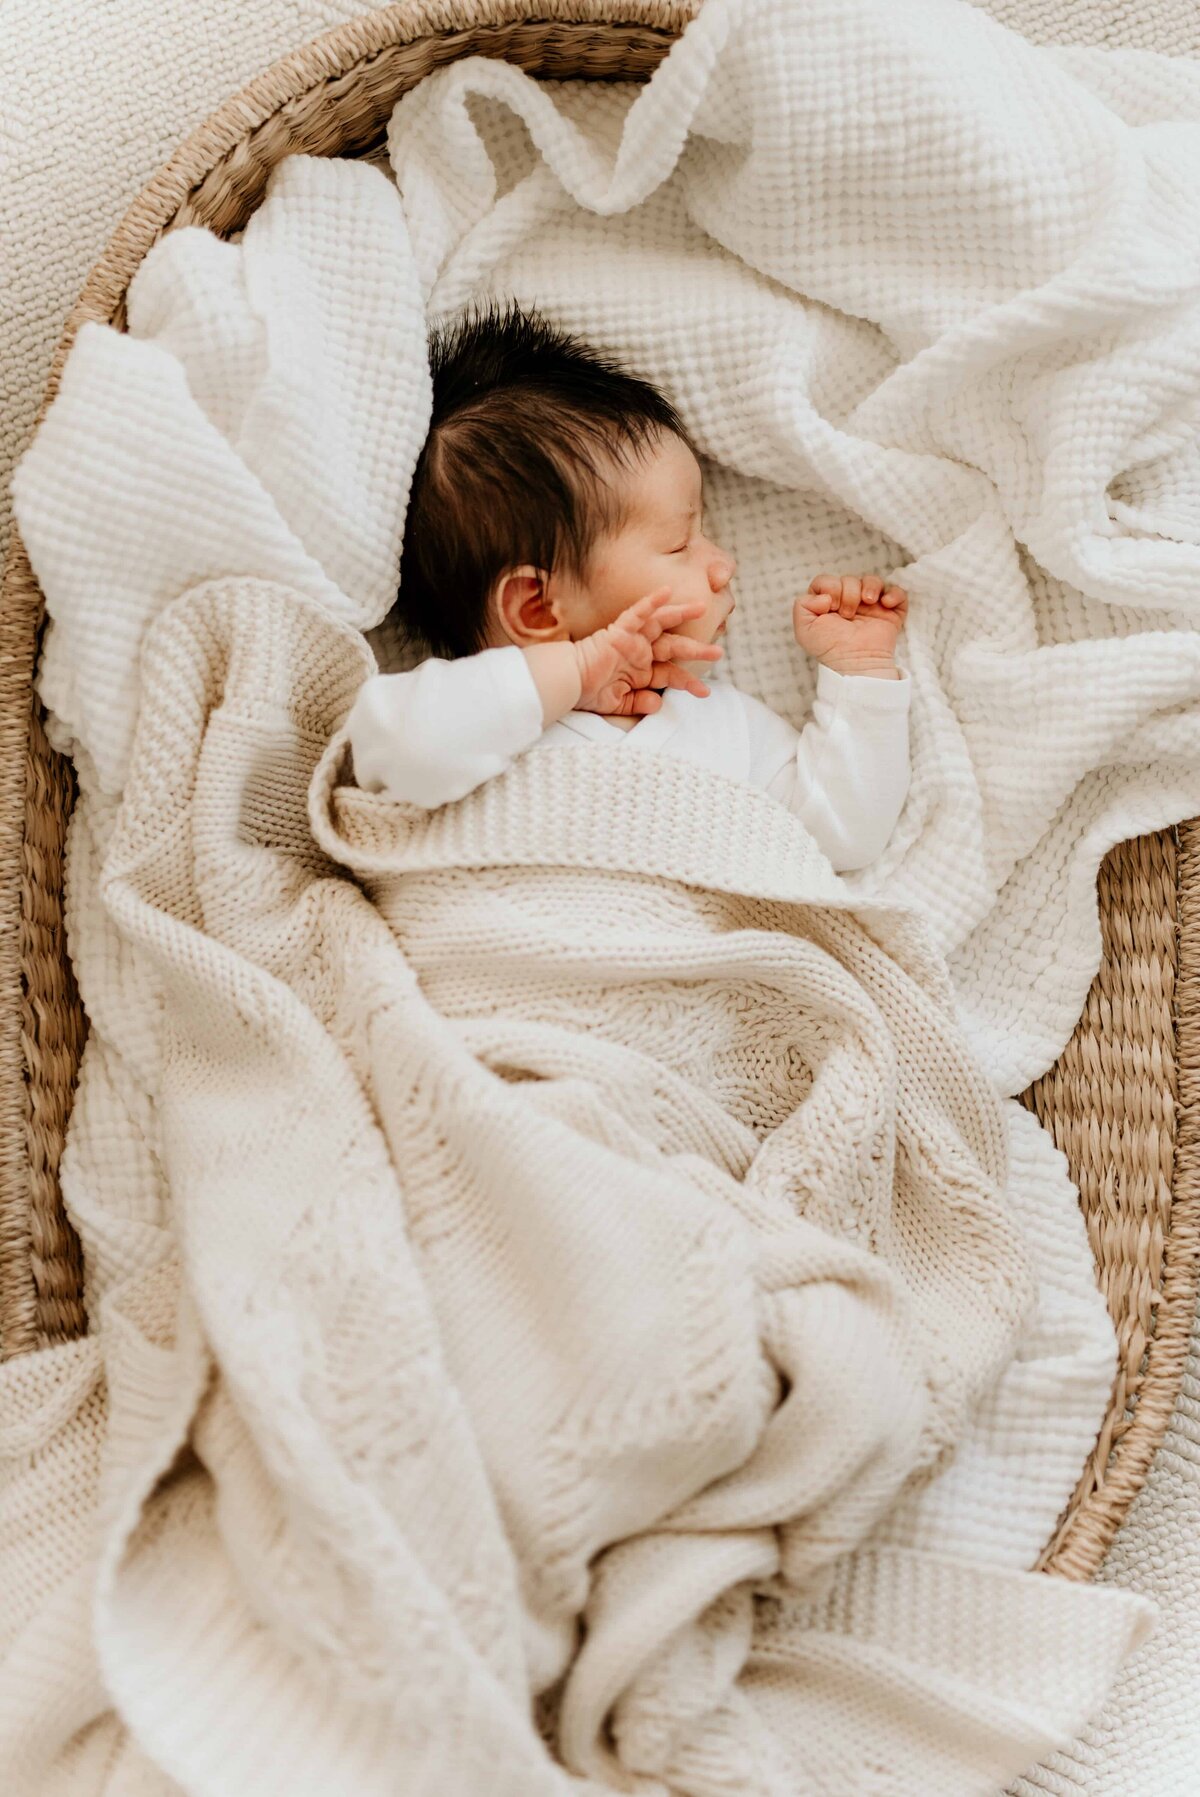 En baby ligger i en kurv og sover. Bilde tatt av Oslo nyfødtfotograf Nicola Paulukat.